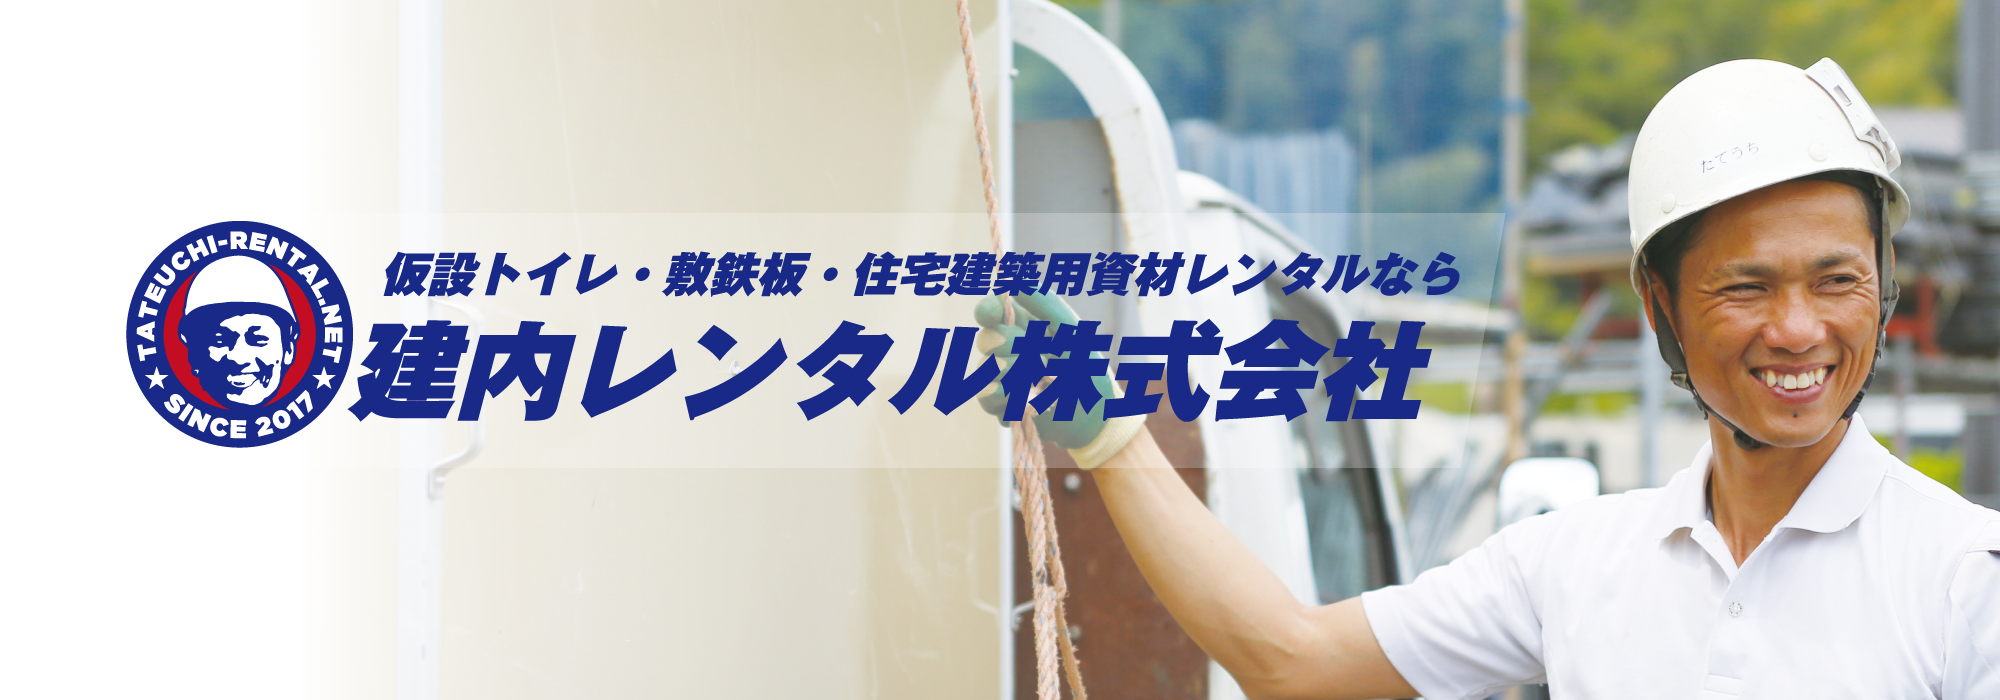 広島・岡山で仮設トイレ・住宅建設用資材のレンタル建内レンタル